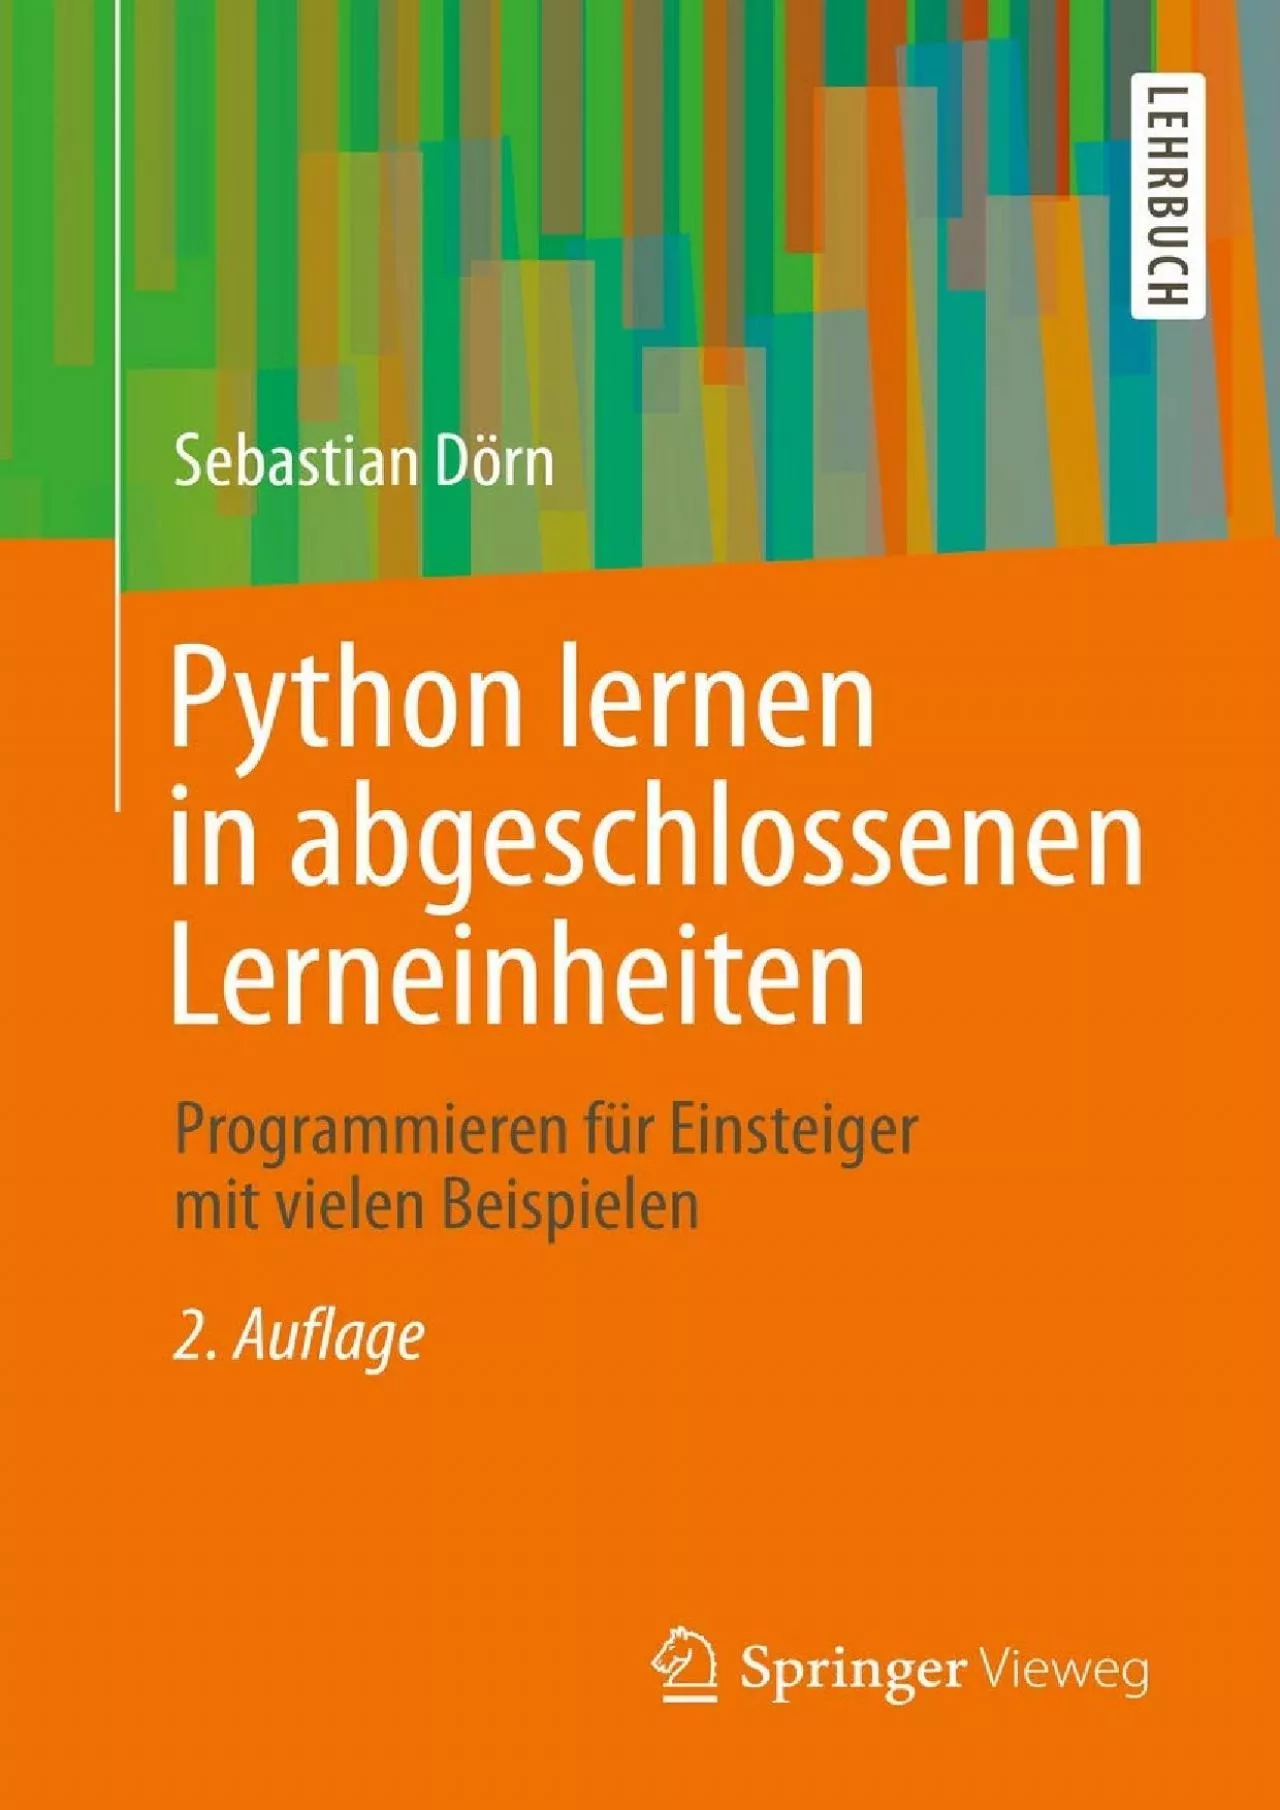 [PDF]-Python lernen in abgeschlossenen Lerneinheiten: Programmieren für Einsteiger mit